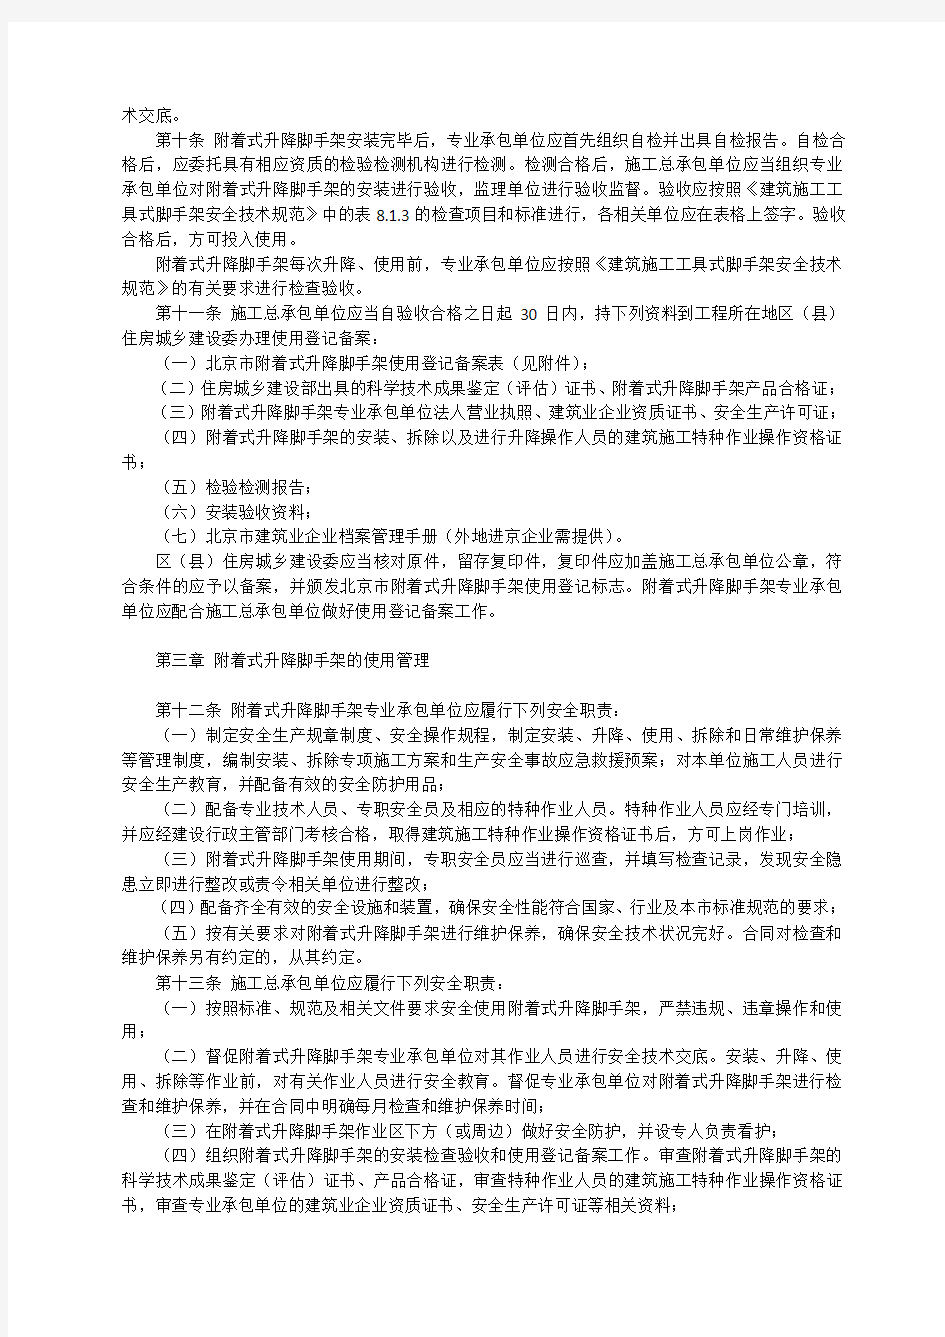 北京市建设工程施工现场附着式升降脚手架安全使用管理办法   京建法〔2012〕4号附件